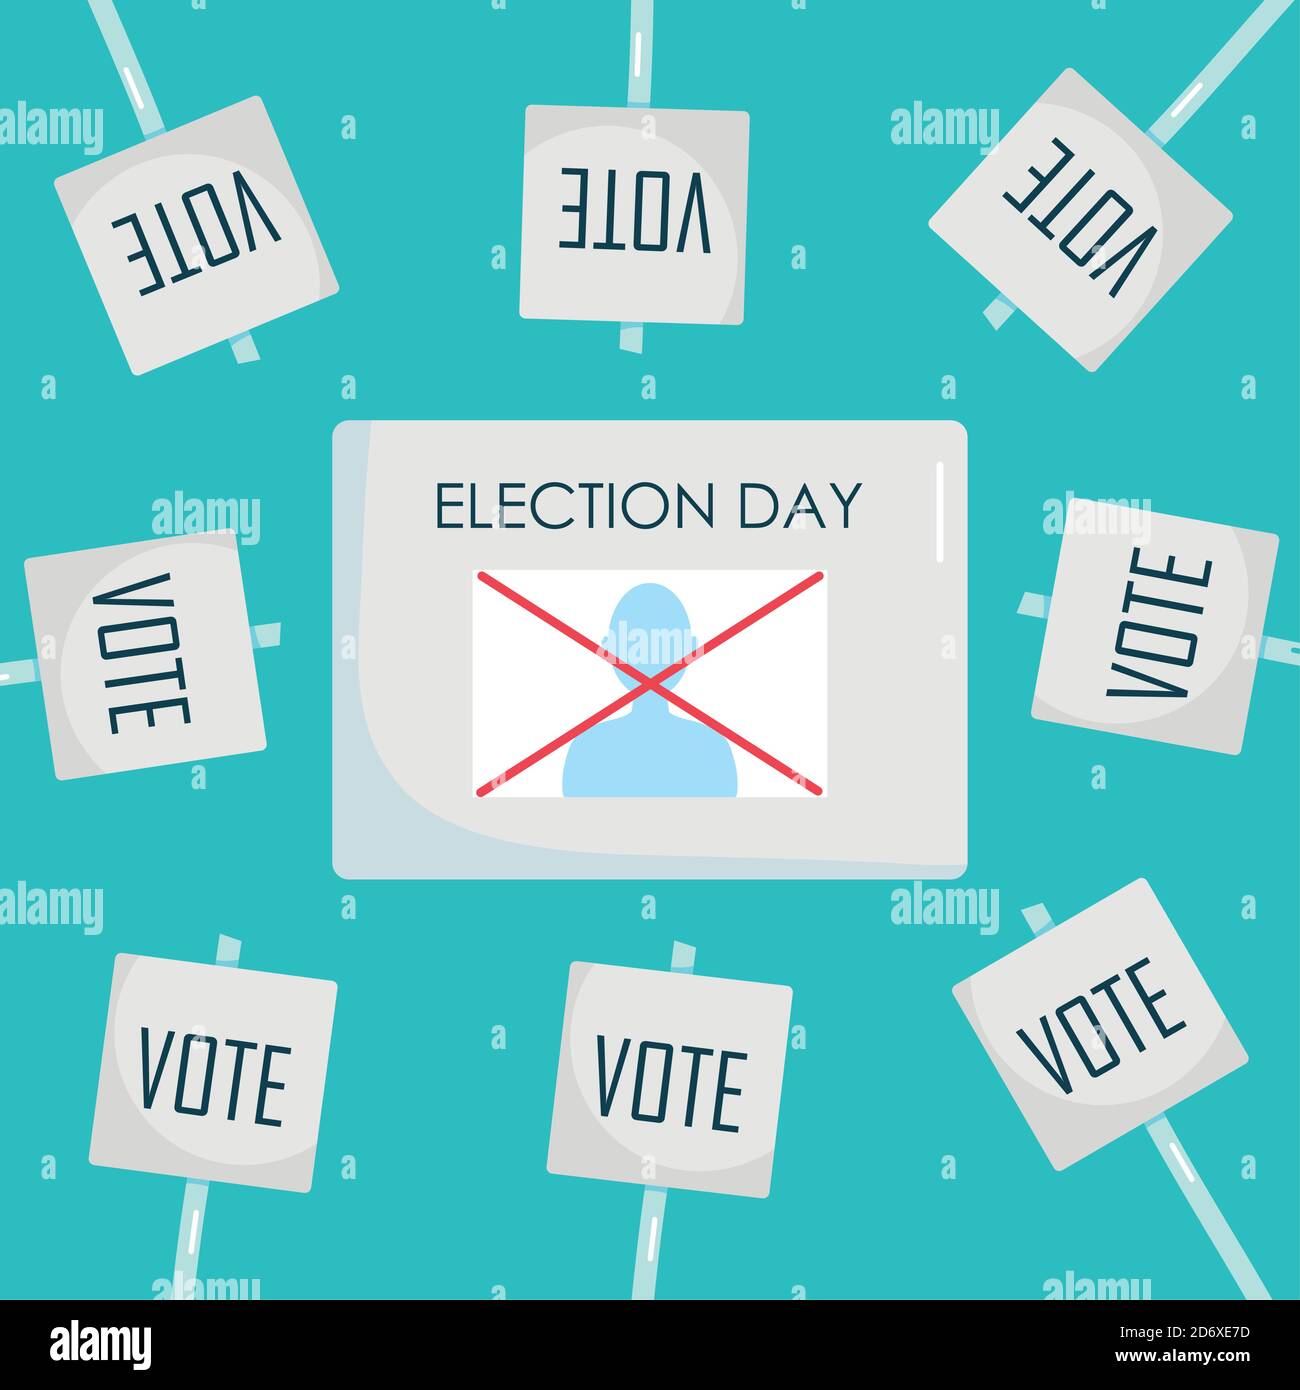 Thiết kế Ngày Bầu cử: Sự sáng tạo đột phá luôn phát triển trong các thiết kế hình ảnh liên quan đến ngày bầu cử. Hãy xem ngay để thấy sự truyền cảm hứng và màu sắc đa dạng của thiết kế ngày bầu cử! 